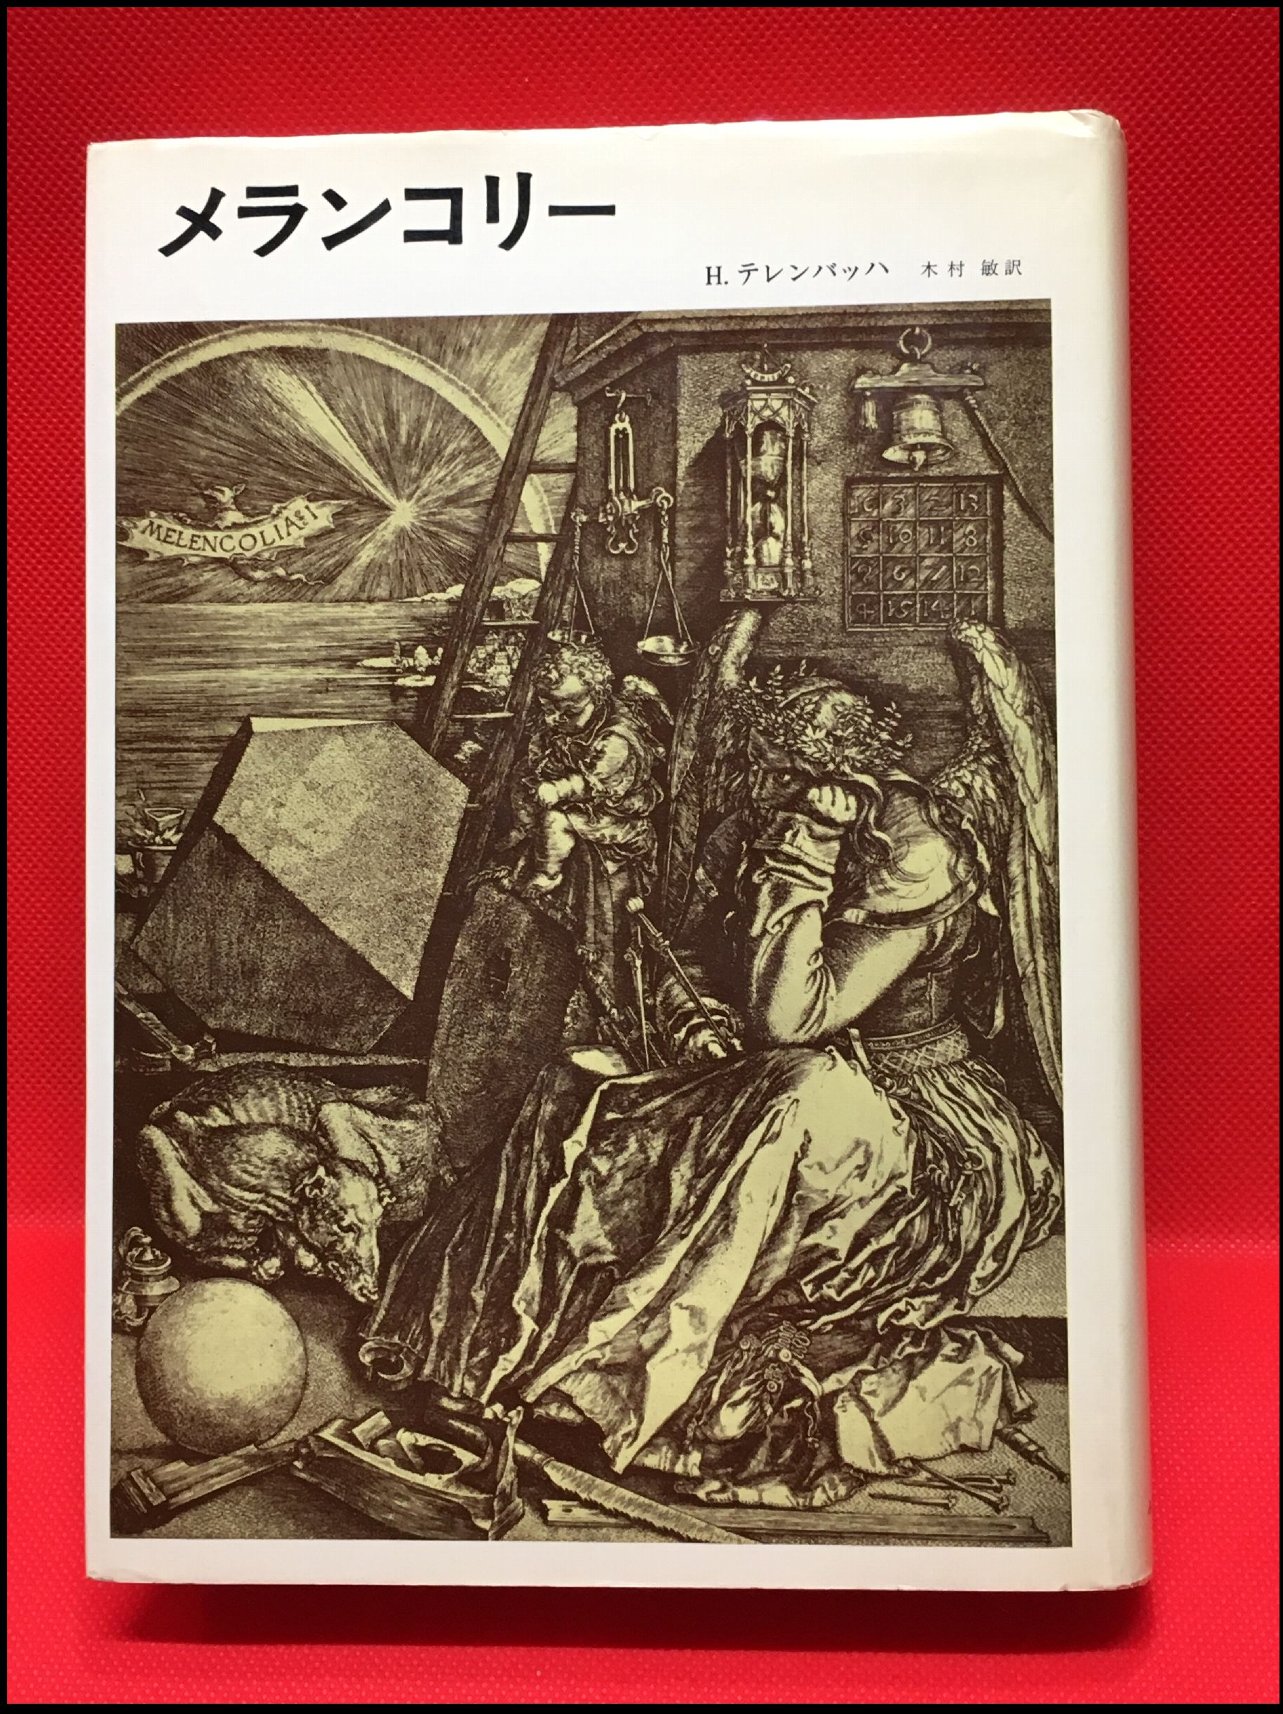 【メランコリー /H.テレンバッハ】みすず書房 1978年 / 古本、中古本